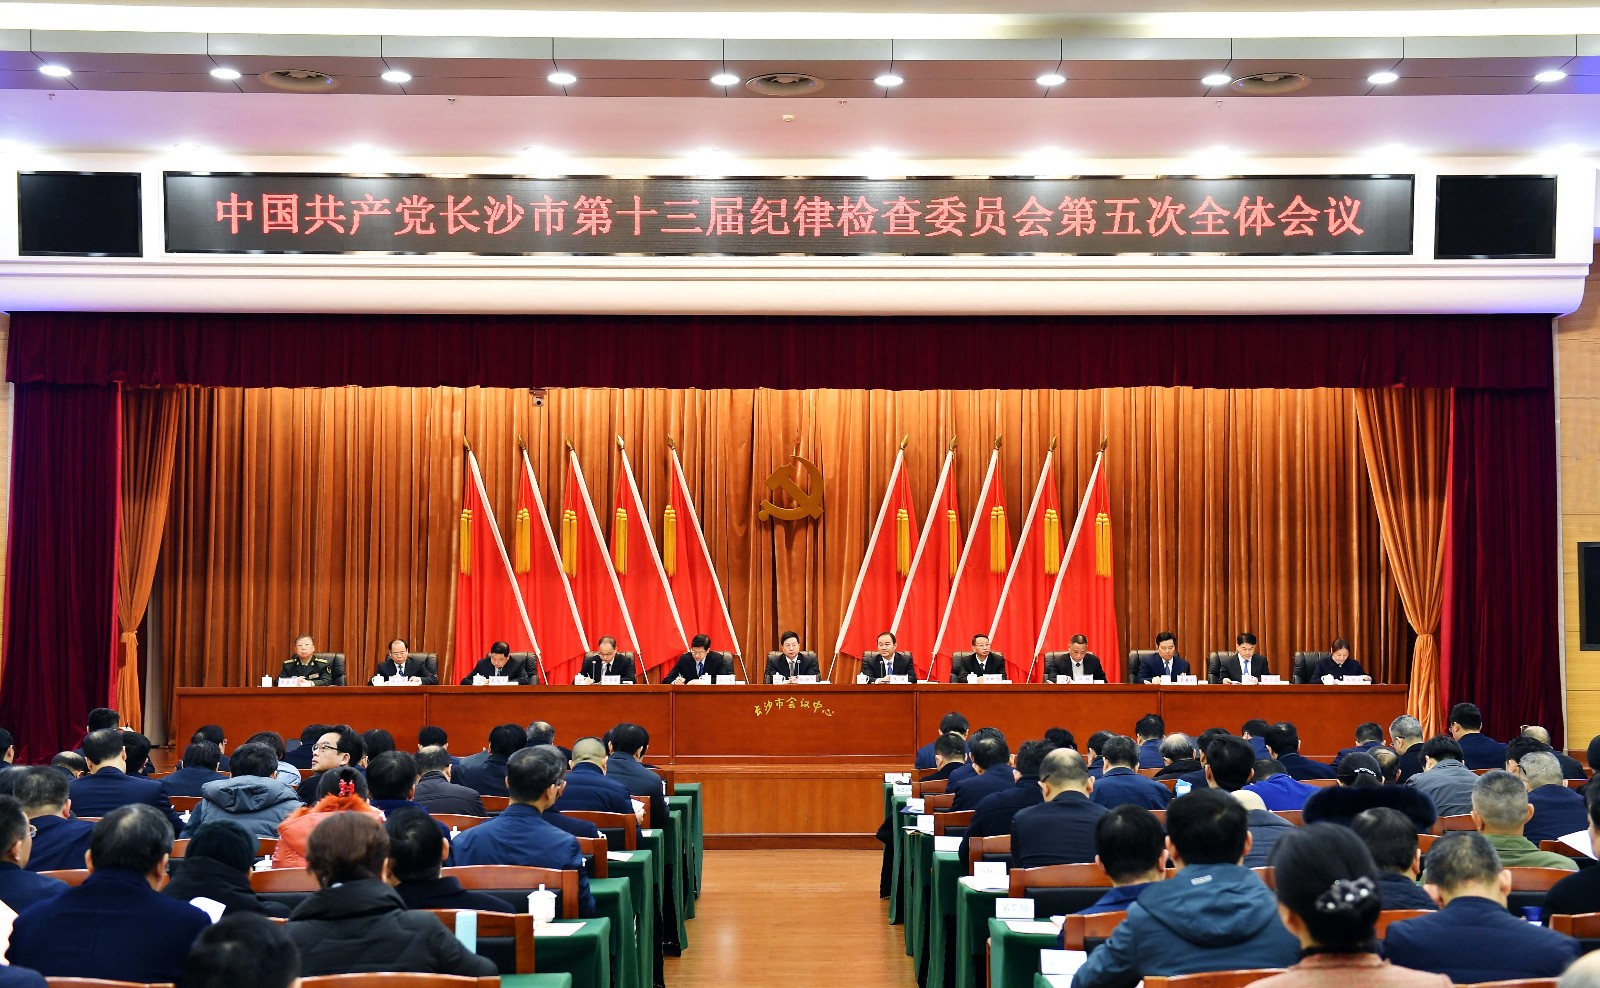 中国共产党长沙市第十三届纪律检查委员会第五次全体会议今日召开。长沙晚报全媒体记者 周柏平 摄